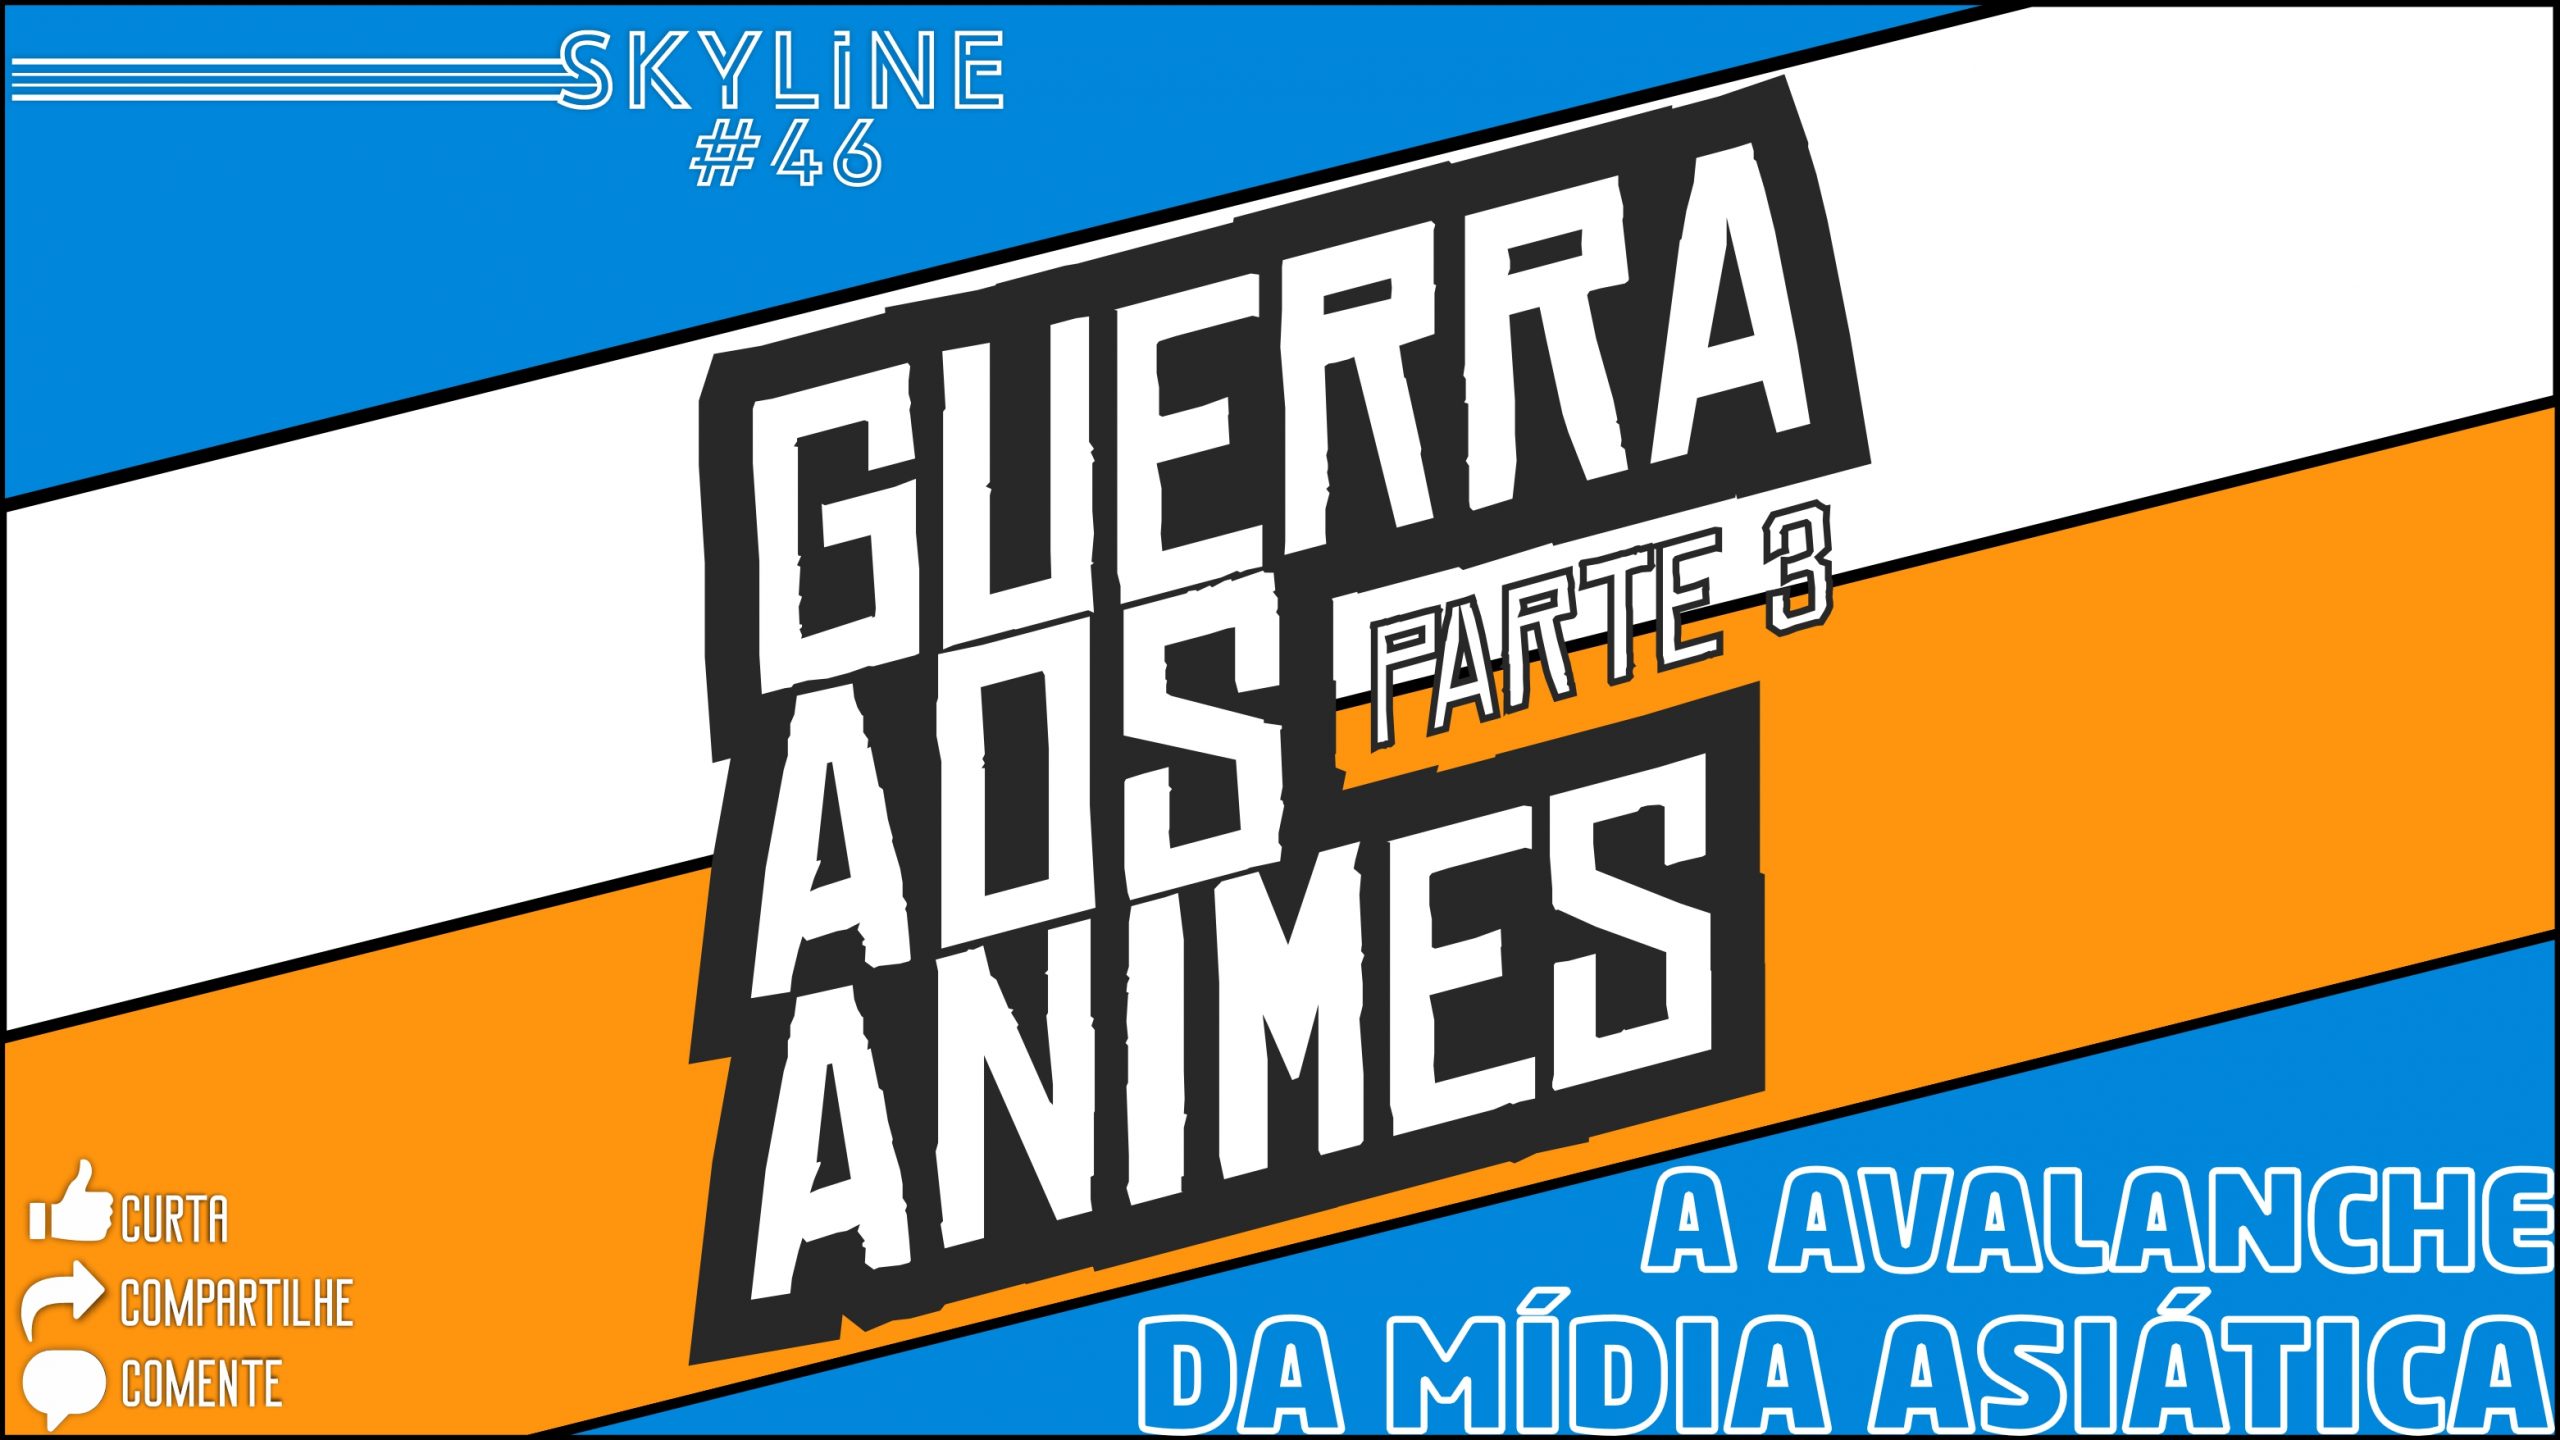 Leadale no Daichi nite tem nova imagem promocional revelada - Anime United